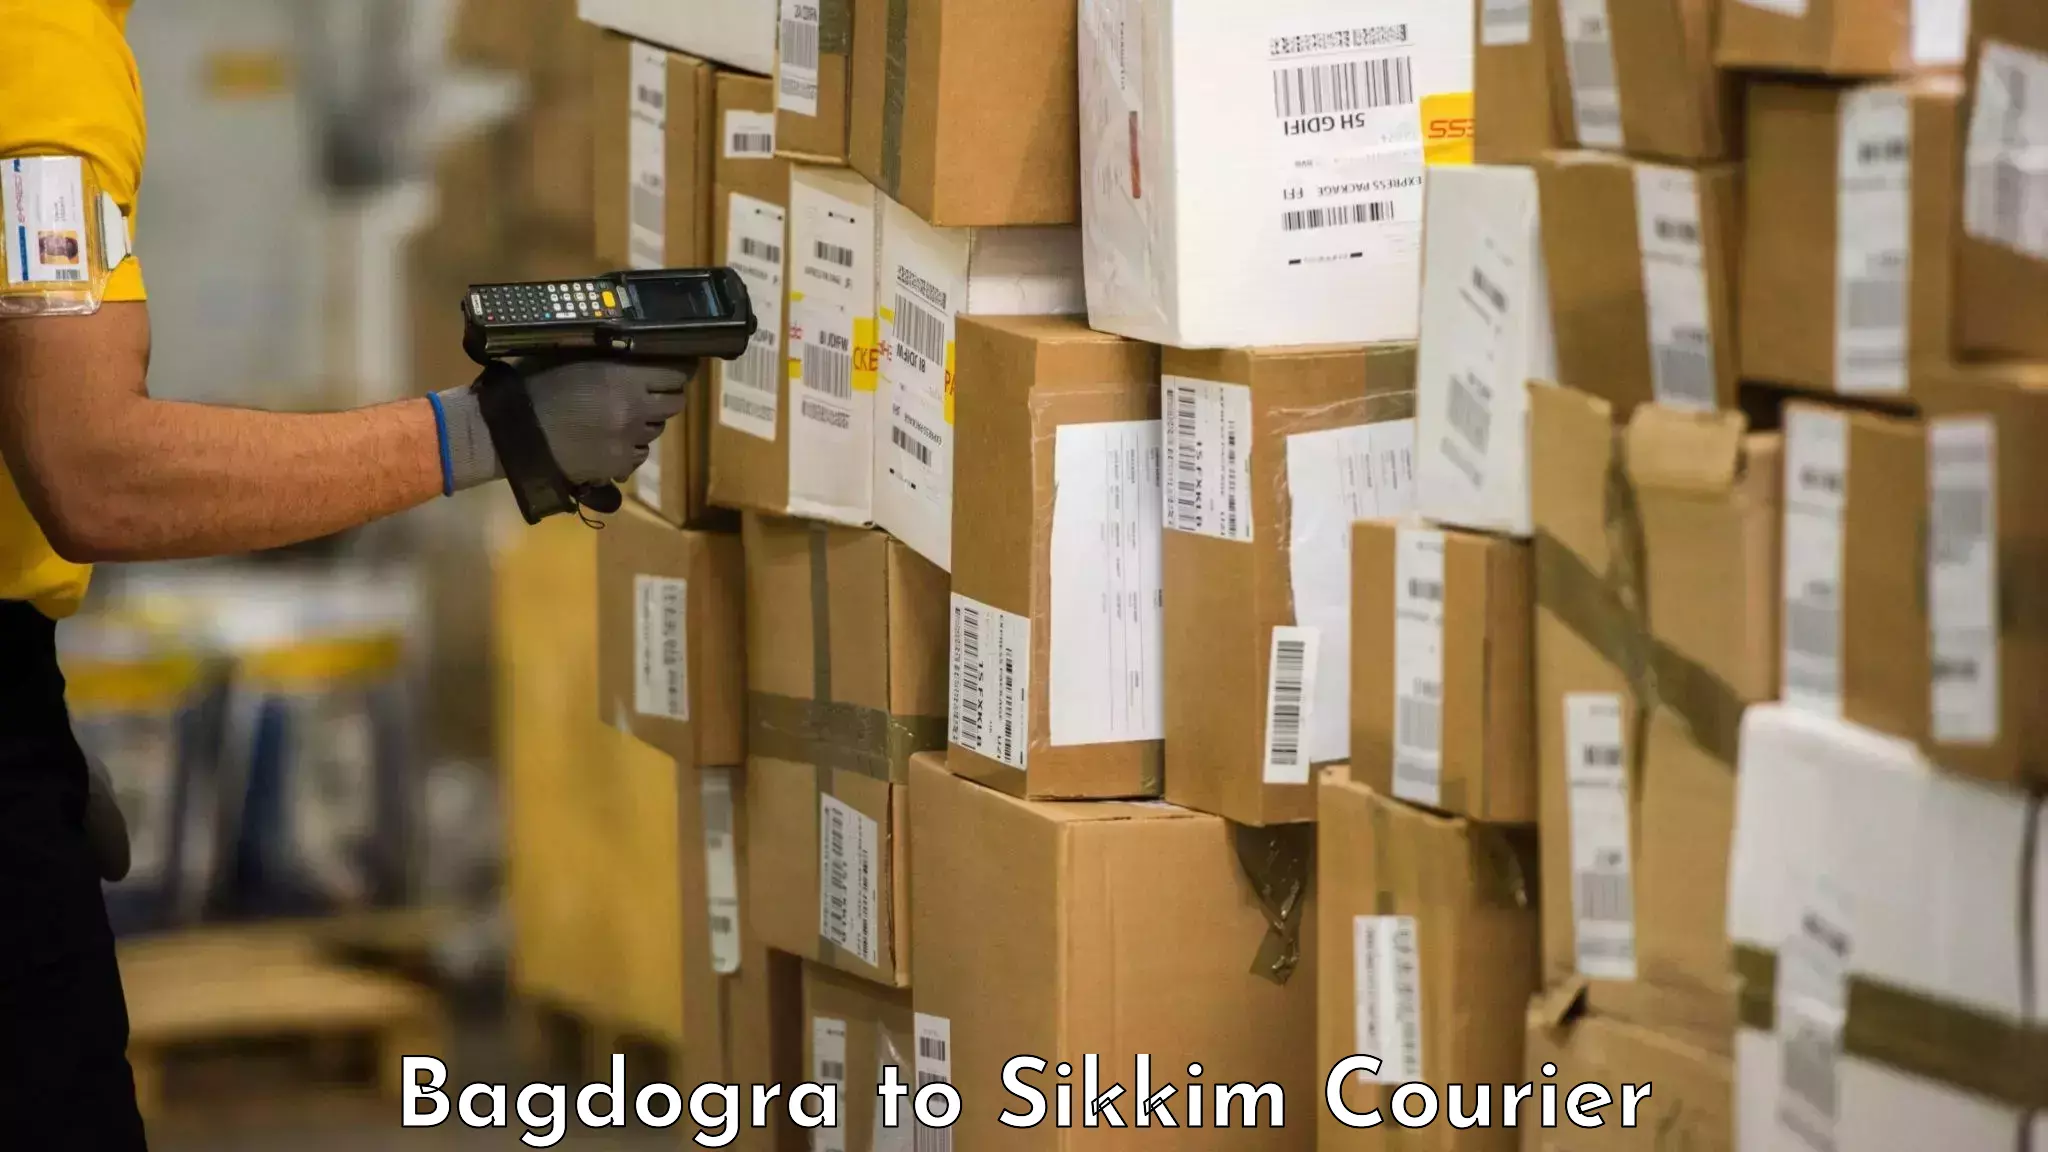 Baggage shipping advice in Bagdogra to Rangpo